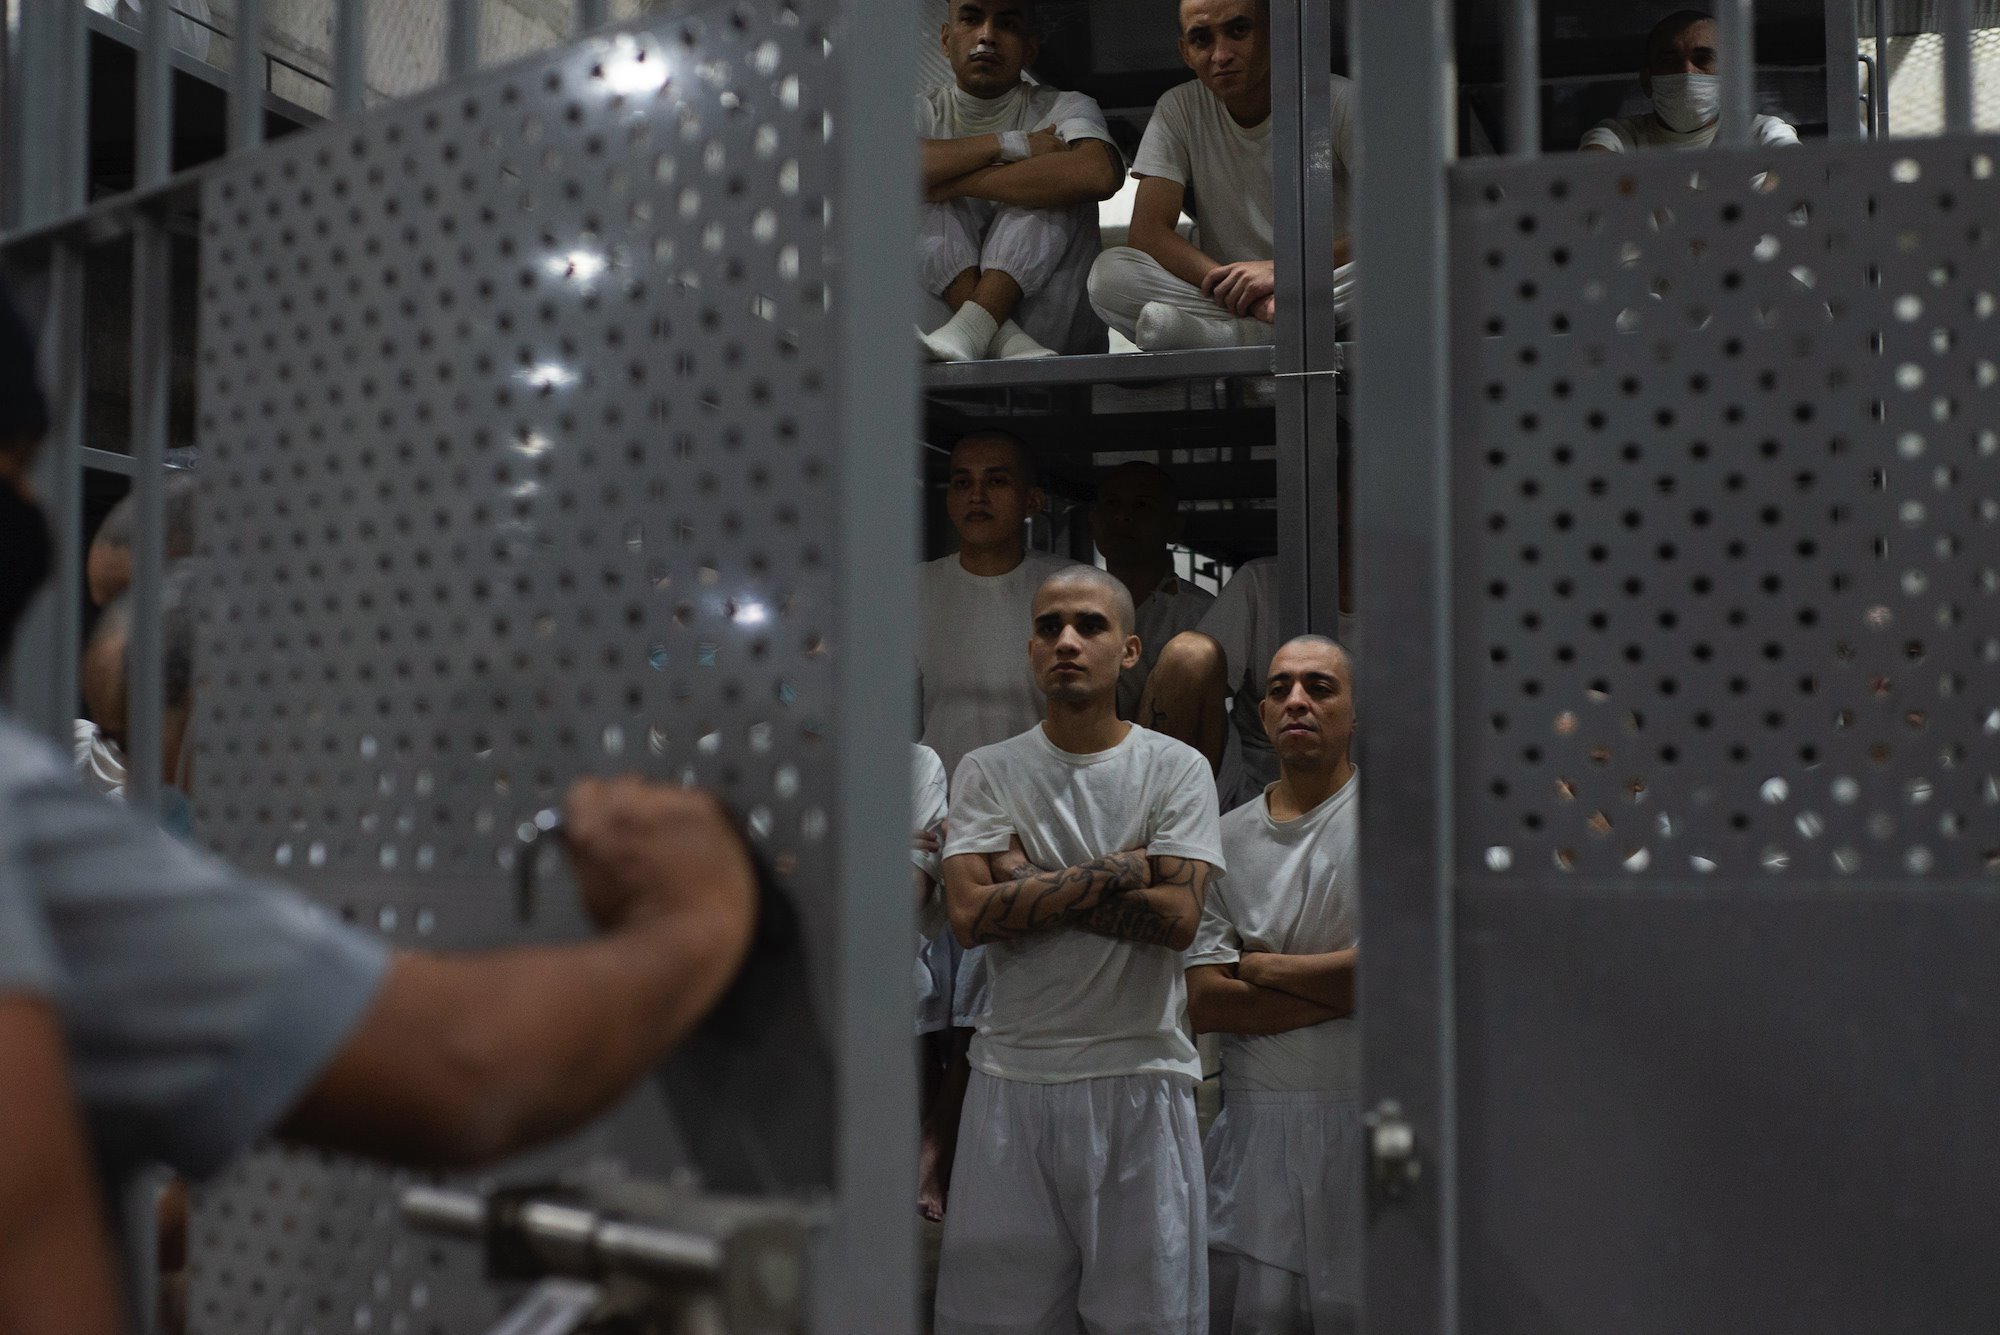 Zatvorenici u CEROT-u provede u elijama sve vreme tokom dana sem 30 minuta/Lissette Lemus/BBC